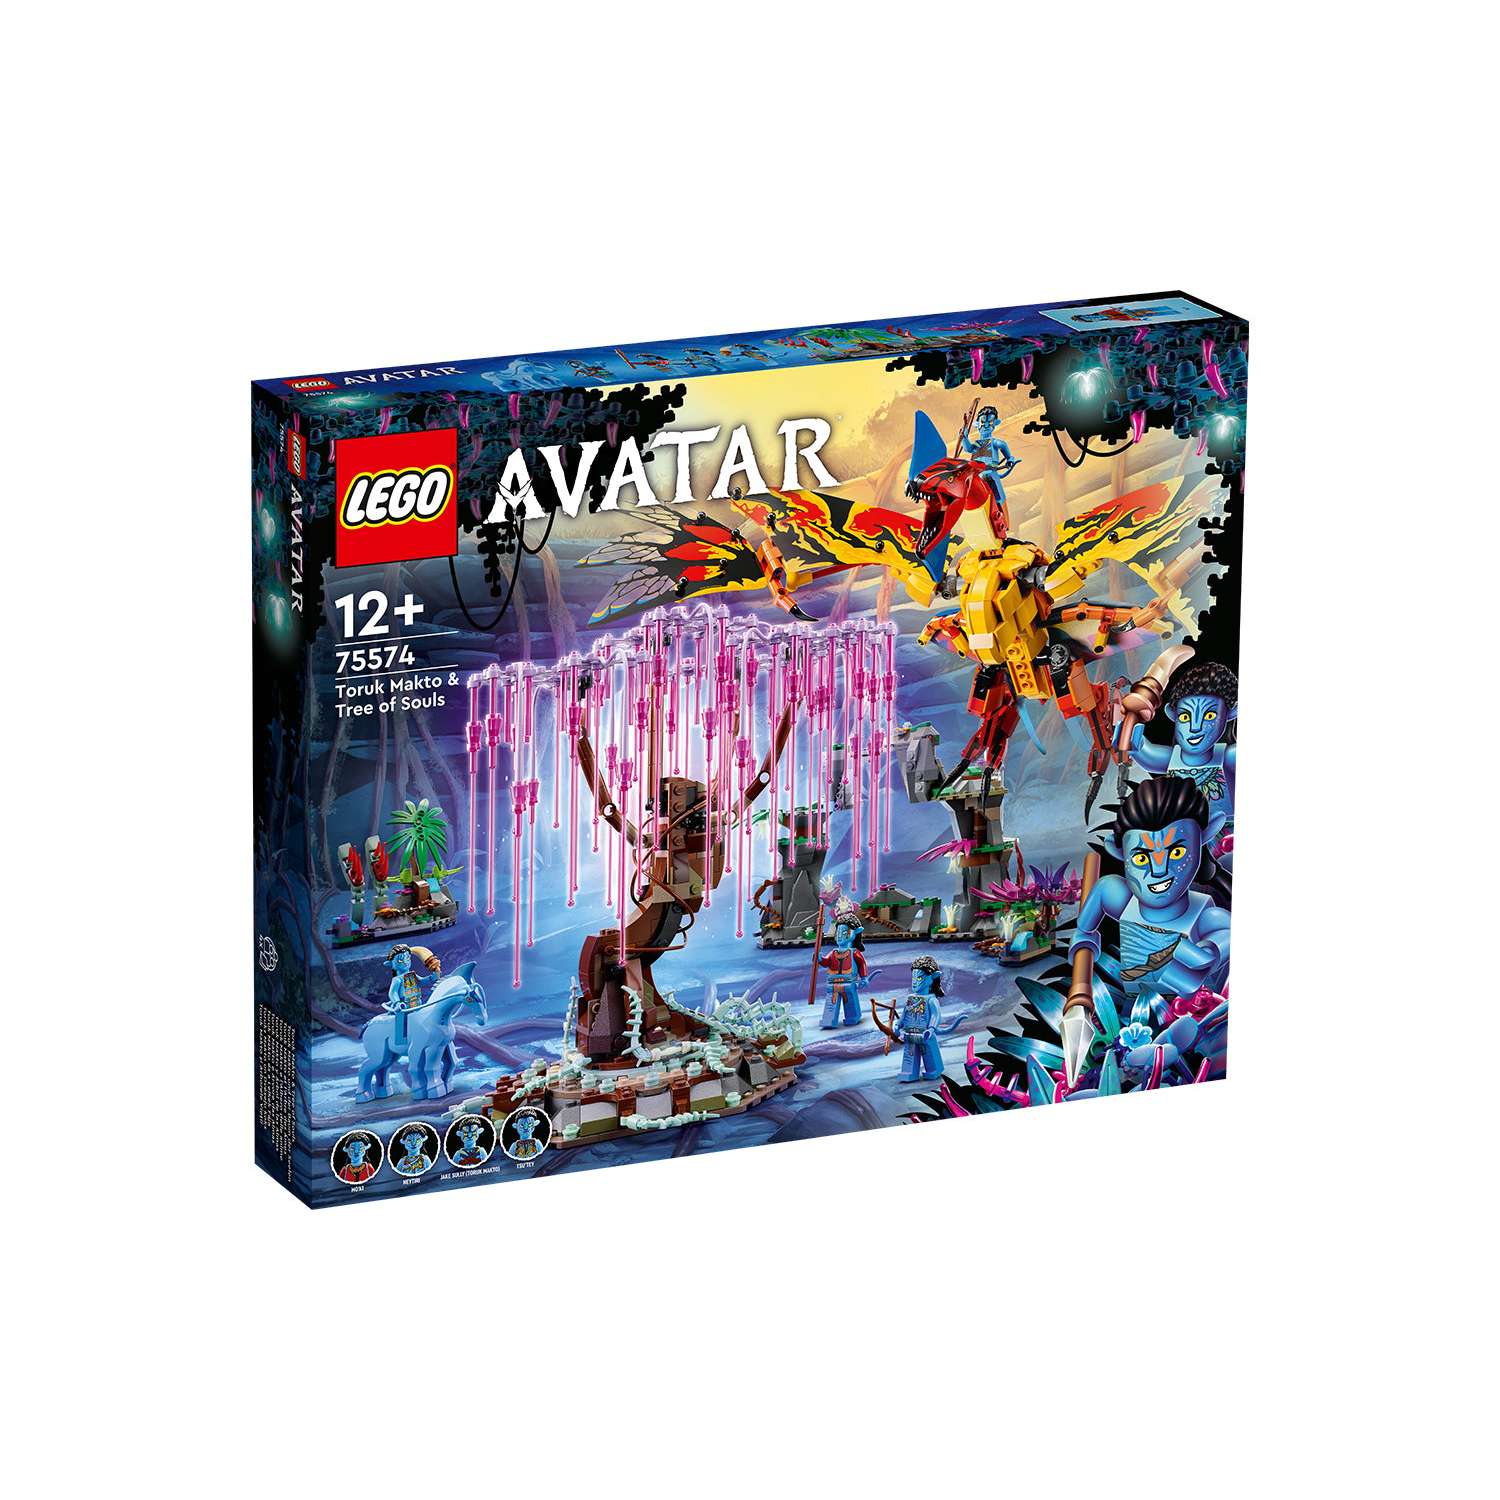 Конструктор LEGO Avatar «Торук Макто и Древо душ» 1212 деталей 75574 - фото 14